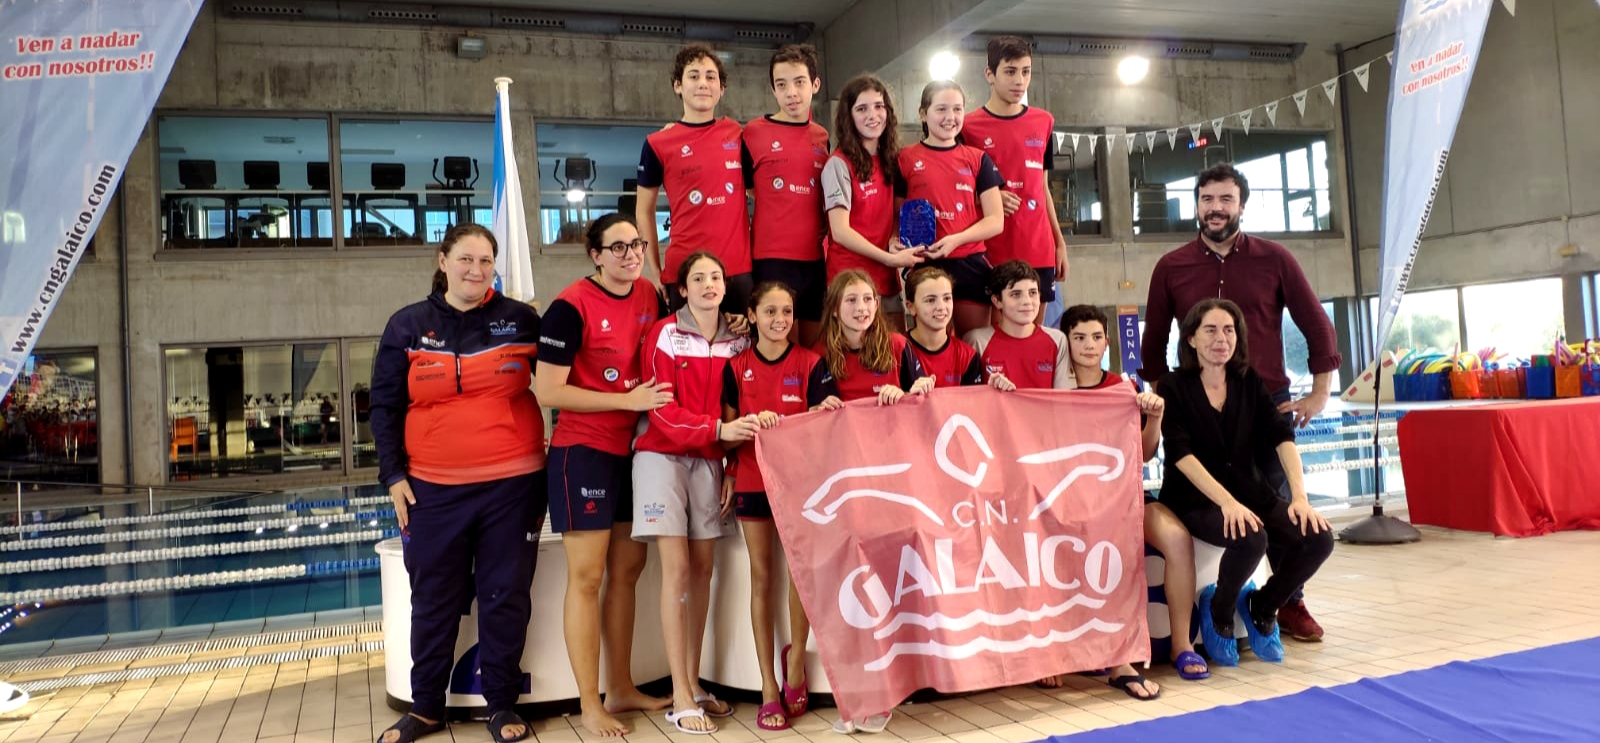 El equipo alevín del CN Galaico, cuarto en la Liga Galega